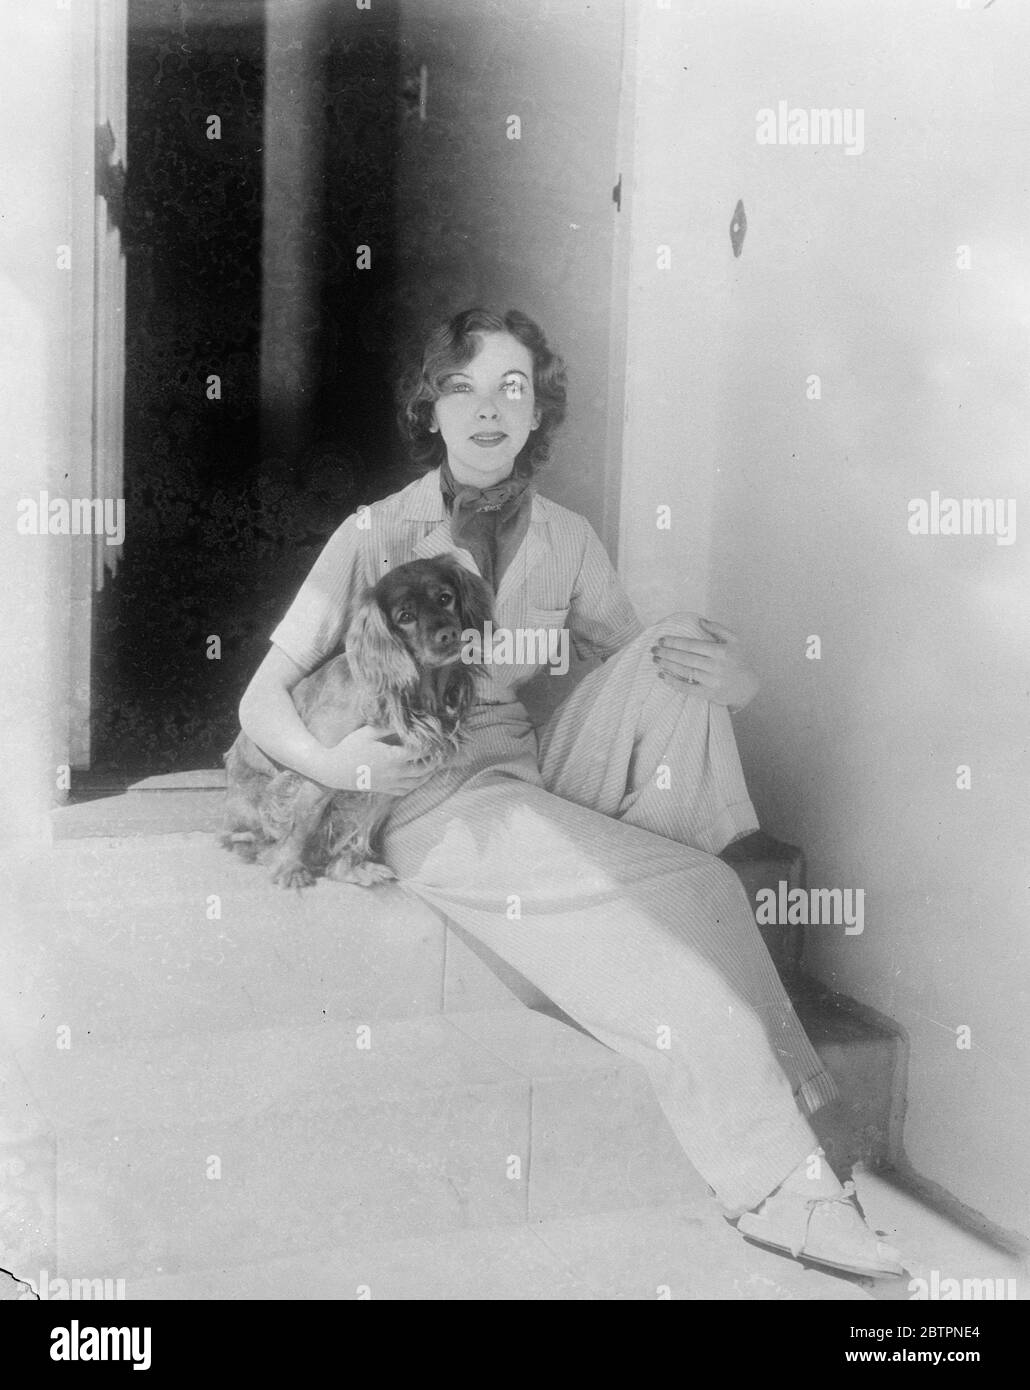 Liberté de mode. Spectacles photo: Portant son nouveau pyjama de plage de mode de matériel rayé, Ida Lupino, l'actrice fille de l'humoriste britannique Stanley Lupino, repose dans le soleil de Californie avec son chien préféré sur les marches de la maison d'Hollywood. 5 juin 1937 Banque D'Images